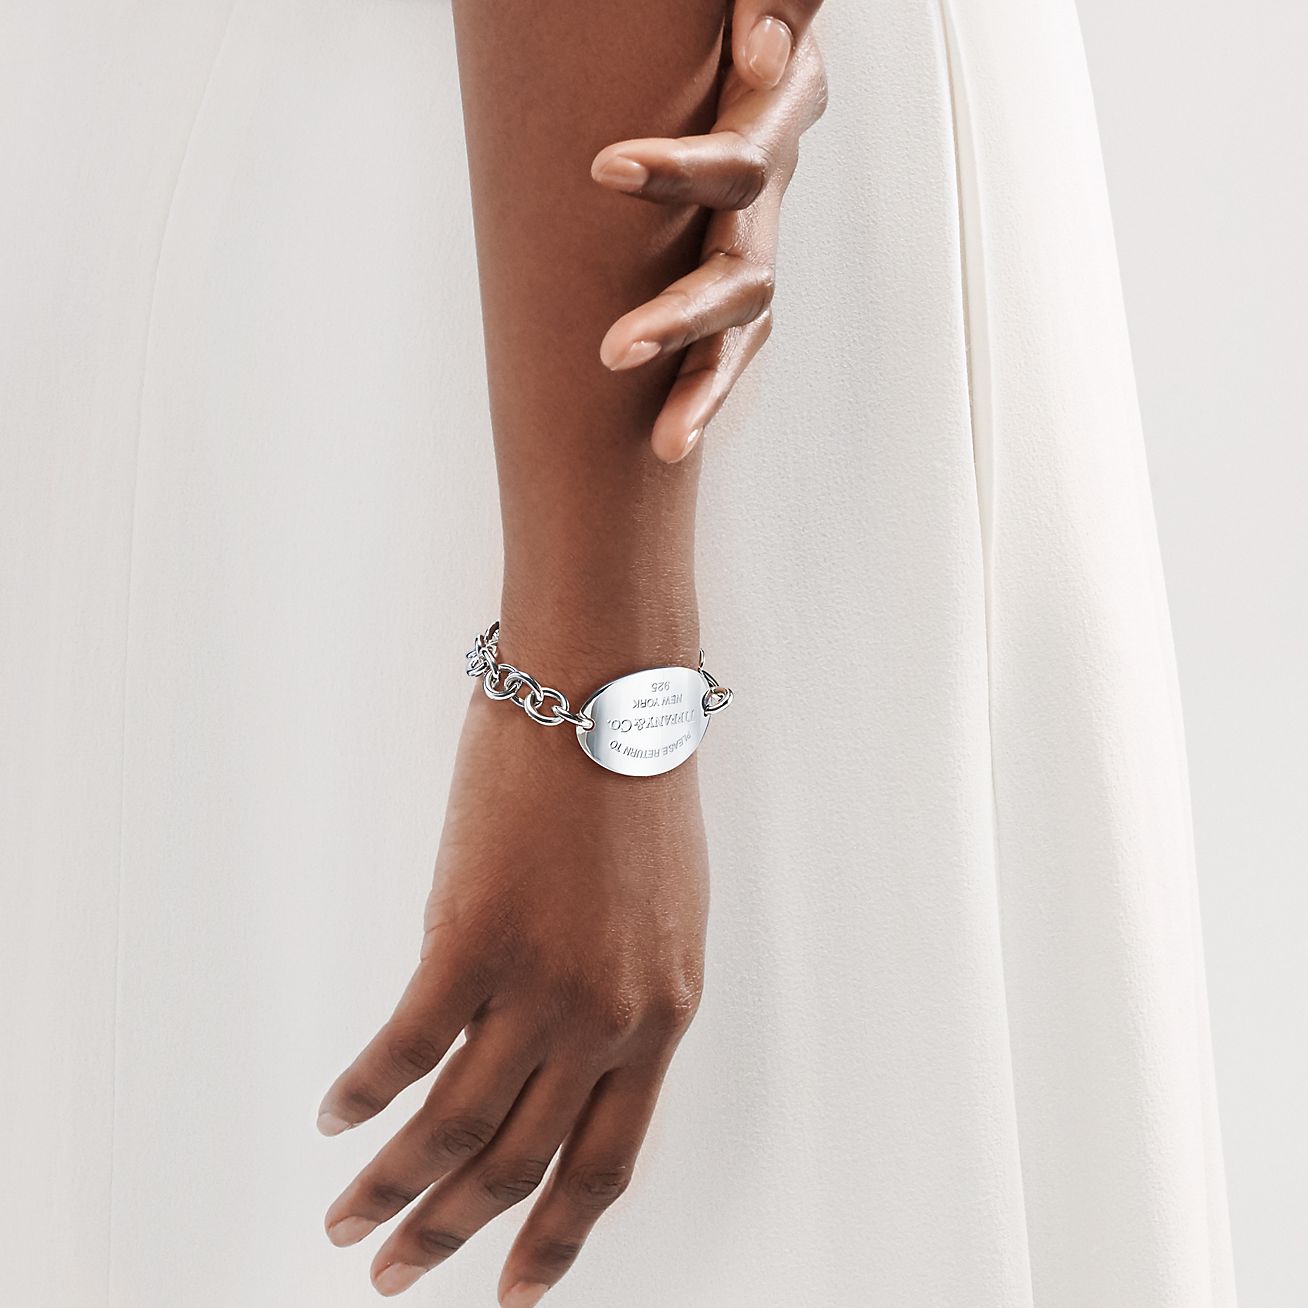 NEW Tiffany & Co. RTT Love Heart Lock bracelet 7.5 in. Sterling Silver  925